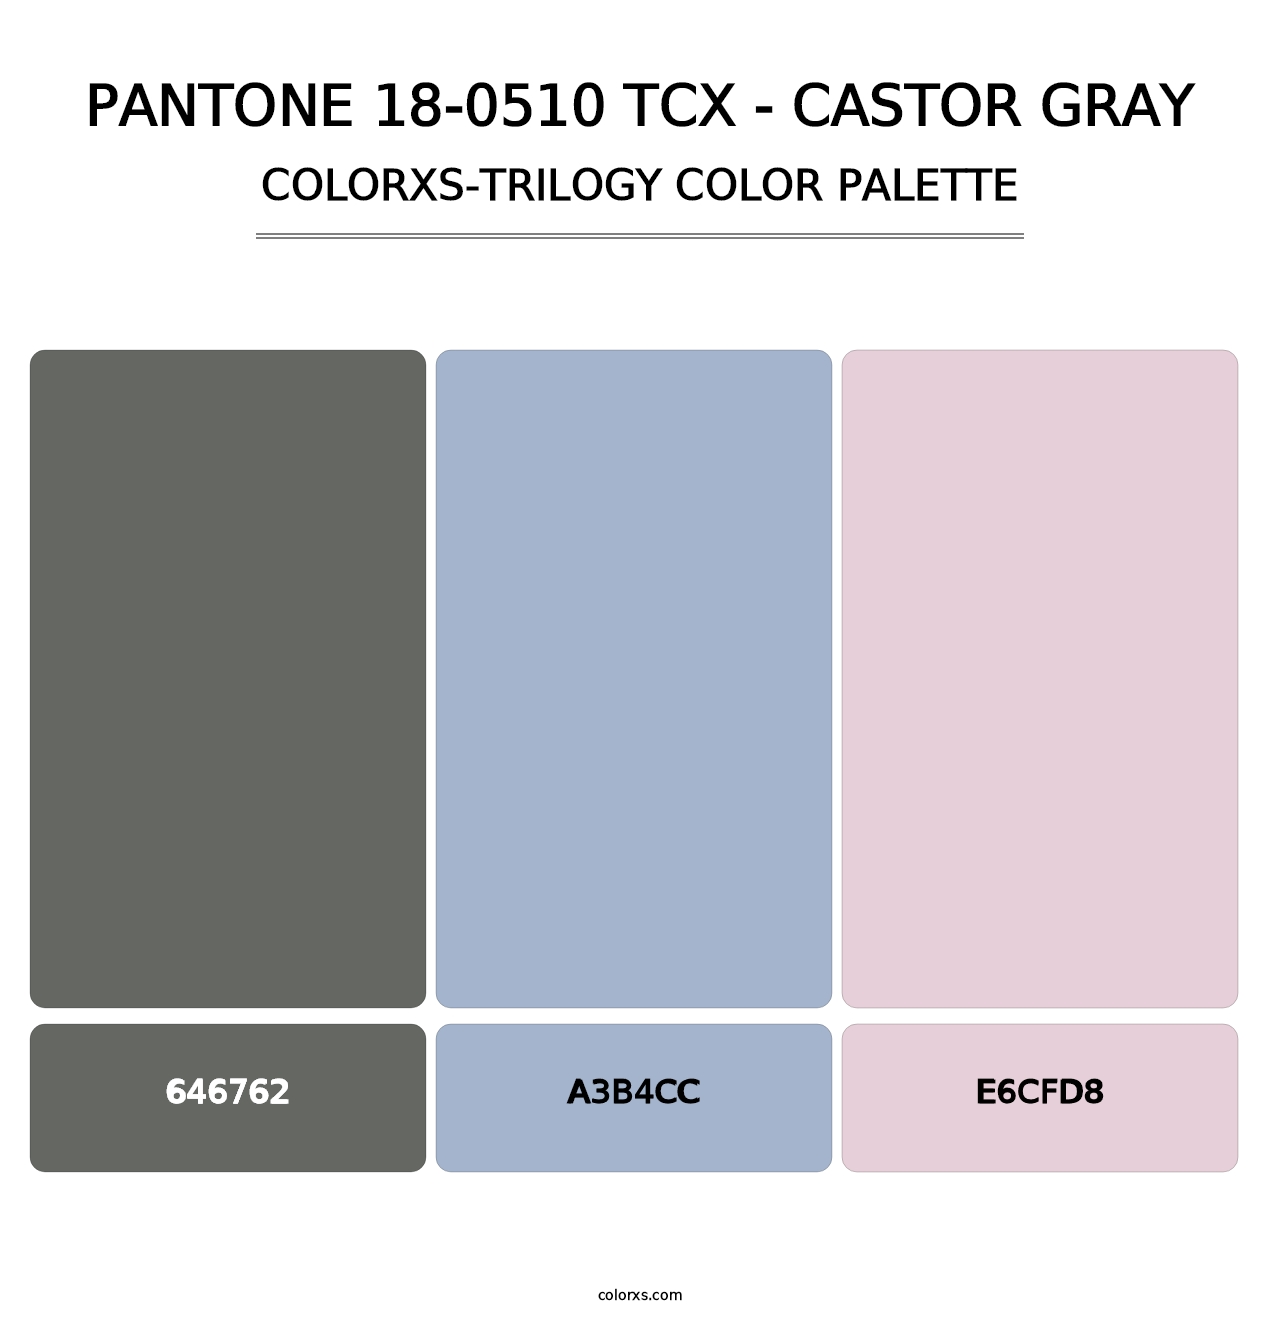 PANTONE 18-0510 TCX - Castor Gray - Colorxs Trilogy Palette